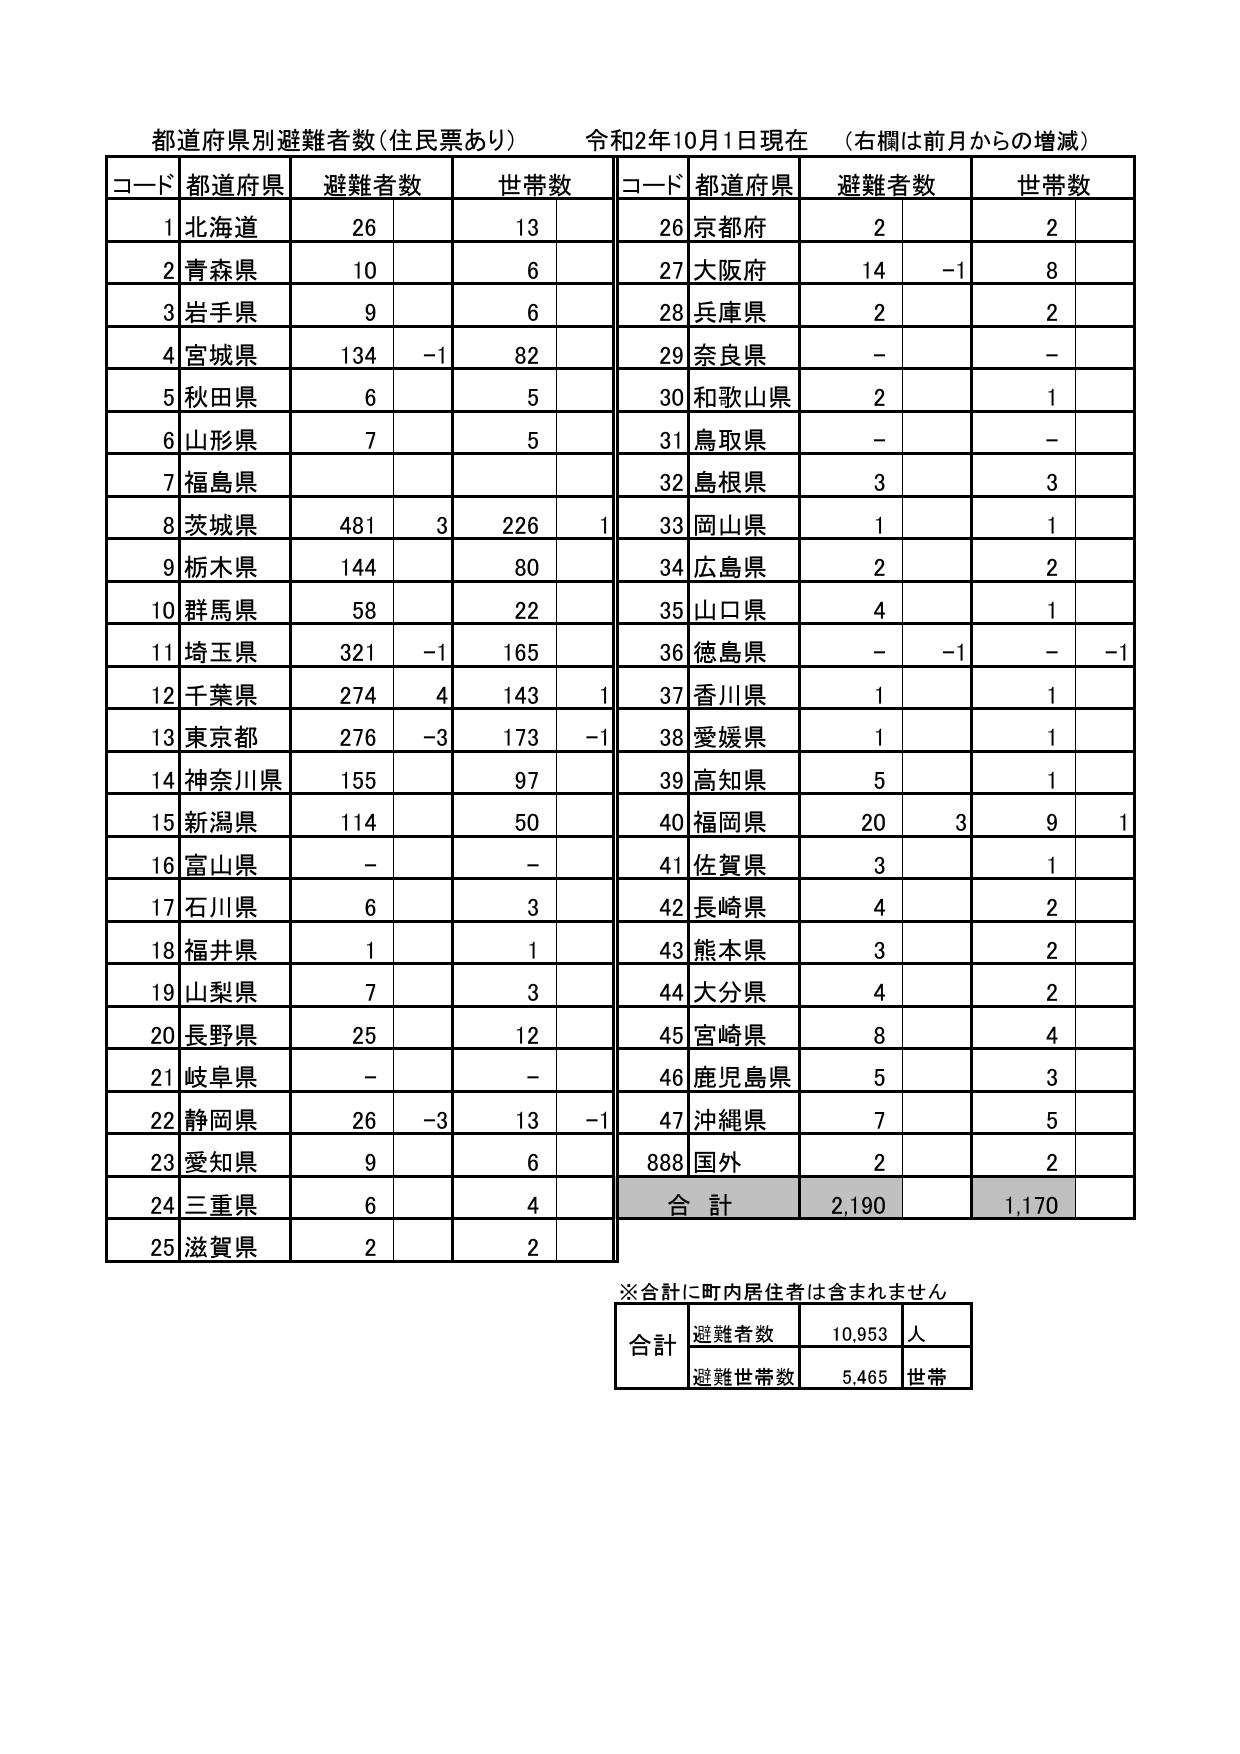 都道府県別避難者数（住民票あり）令和2年10月1日現在